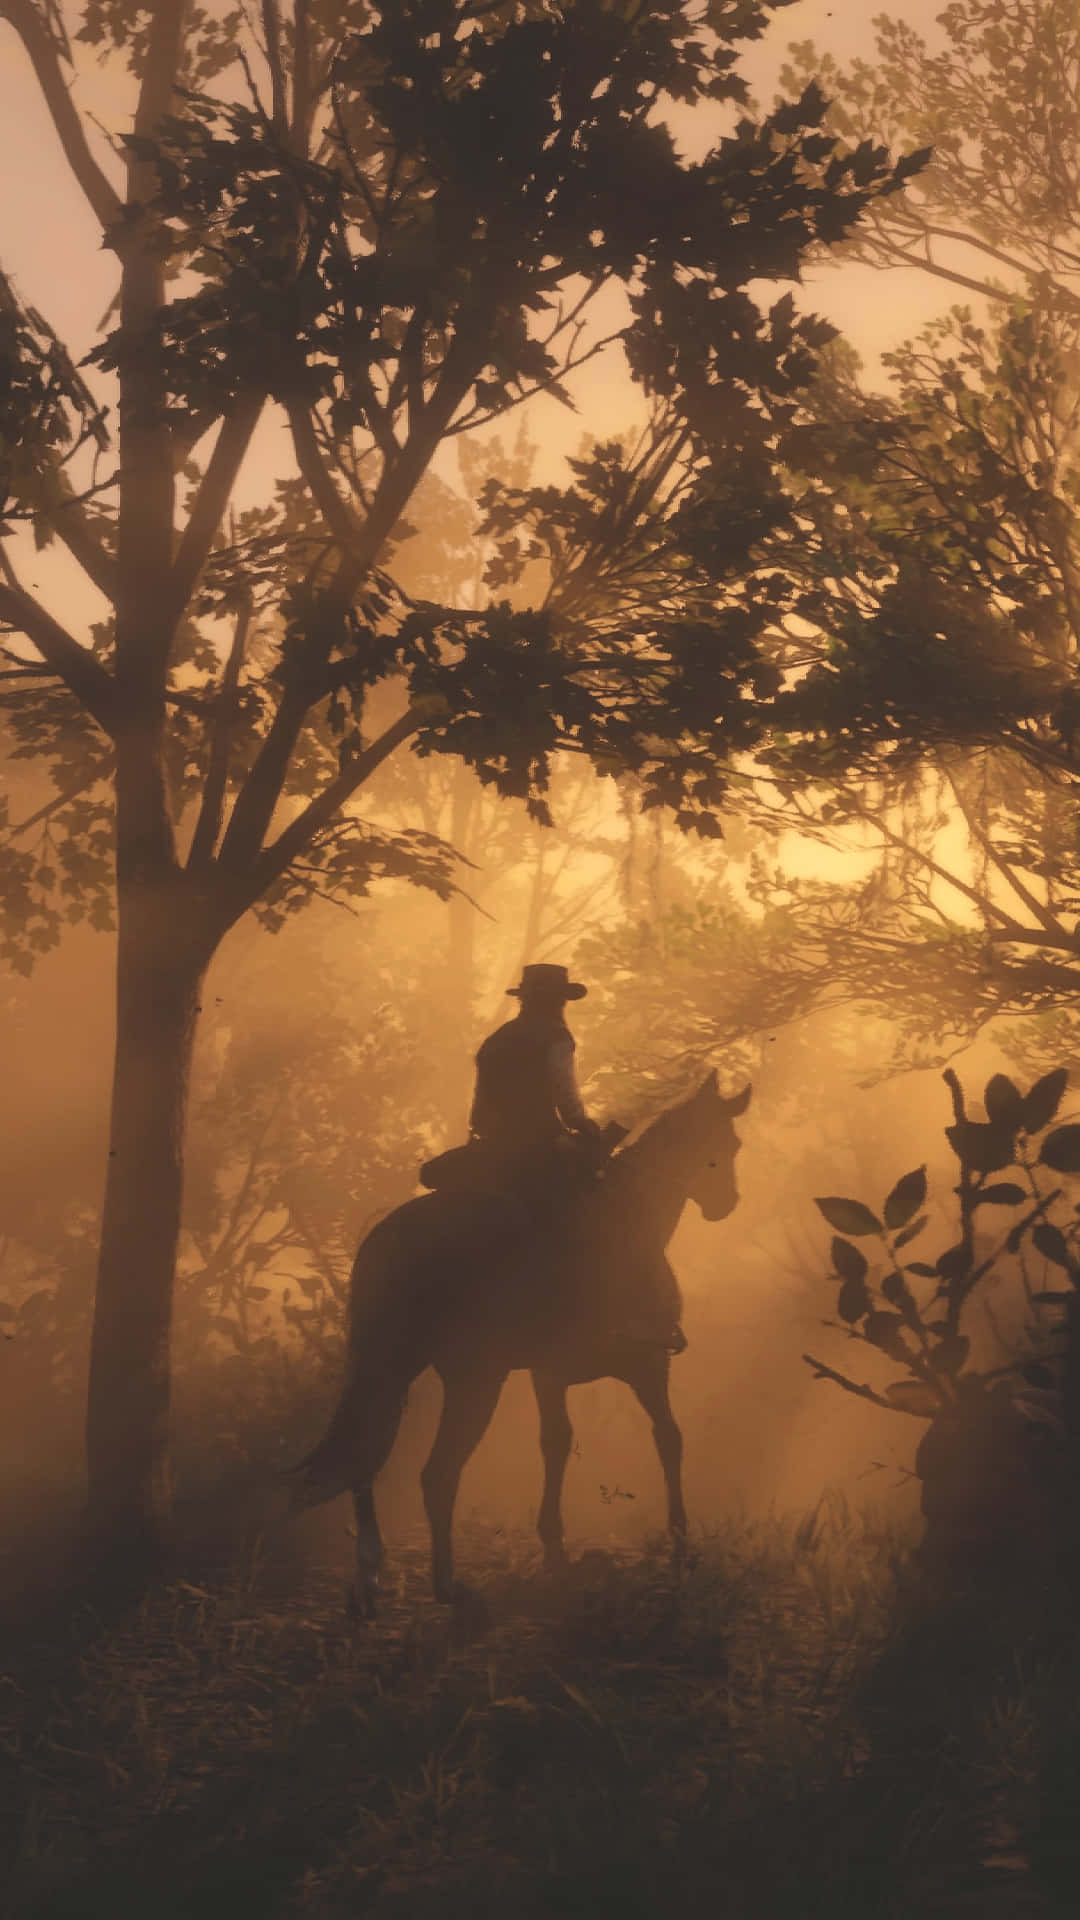 Preparail Tuo Cavallo E Preparati Per Una Avventura Emozionante In Red Dead Redemption 4k! Sfondo